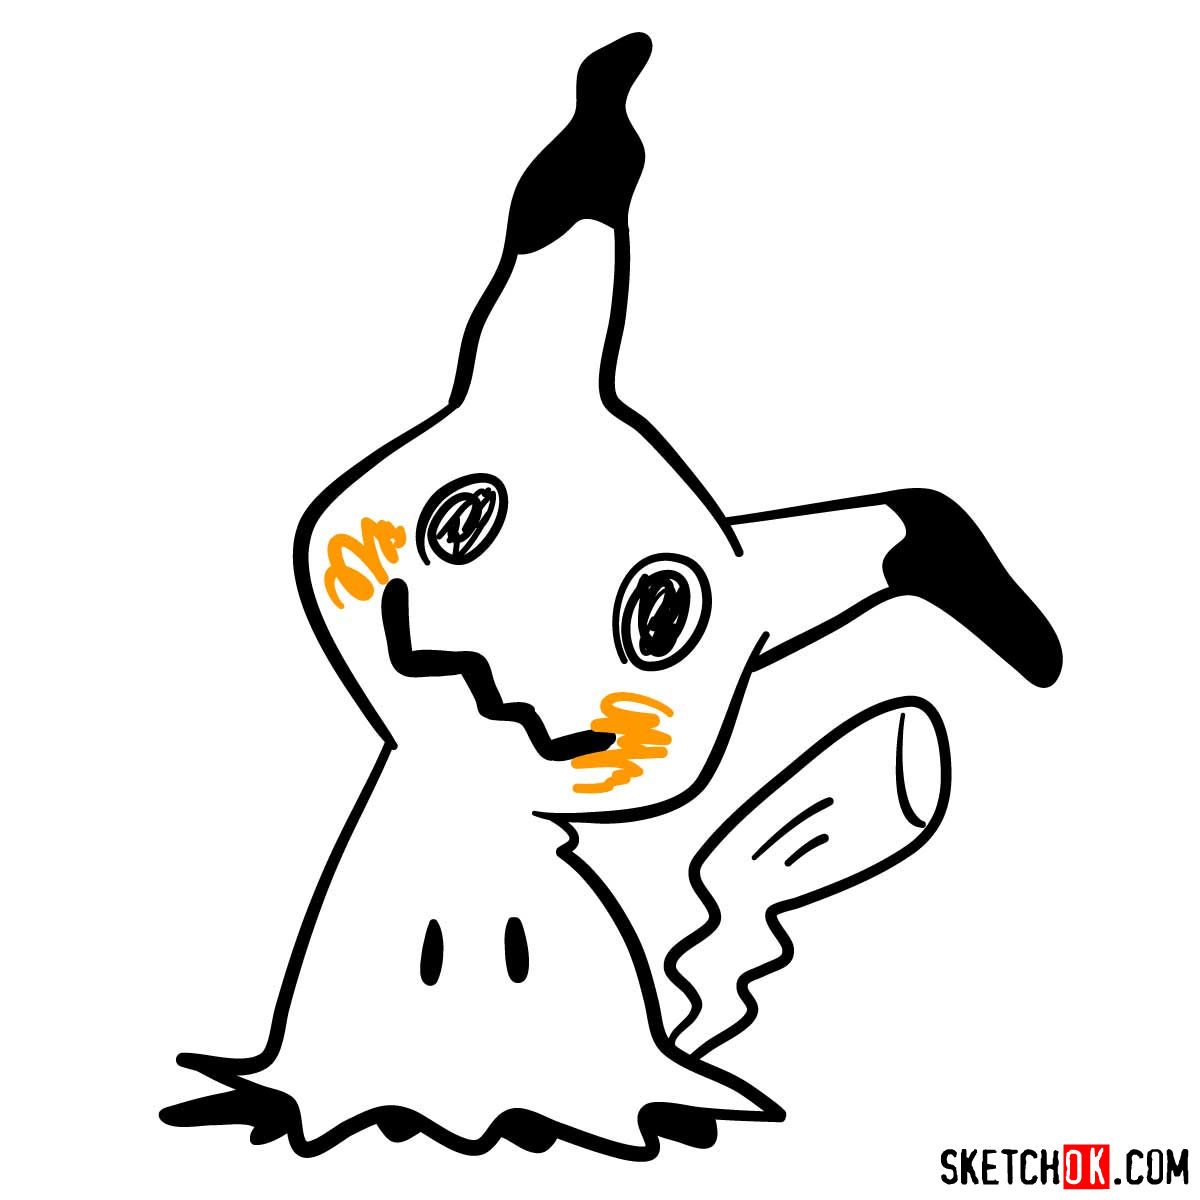 How to draw Mimikyu ghost pokemon (looks like Pikachu) - step 09